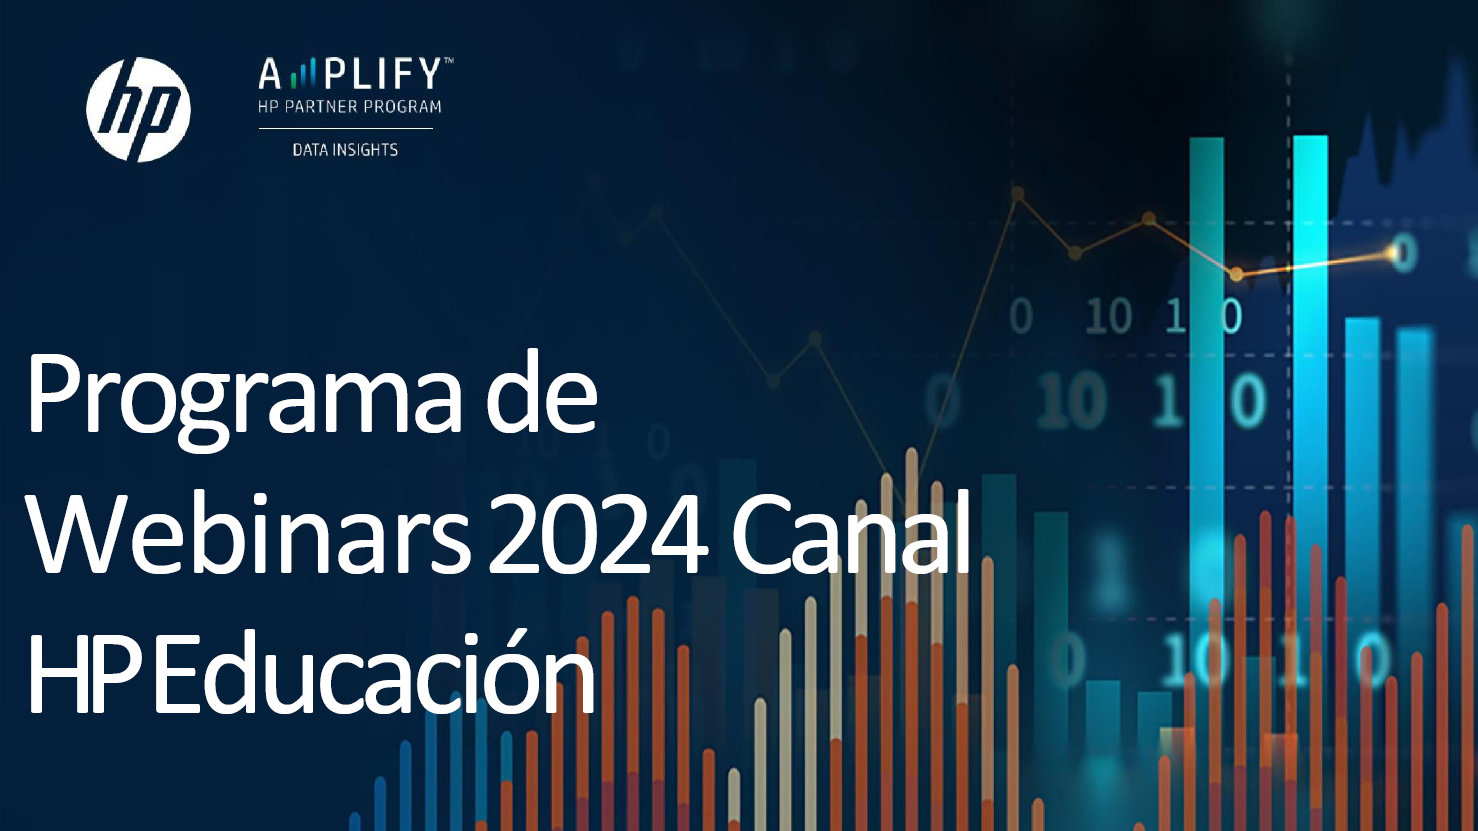 CANAL AMPLIFY HP EDUCACIÓN 2024